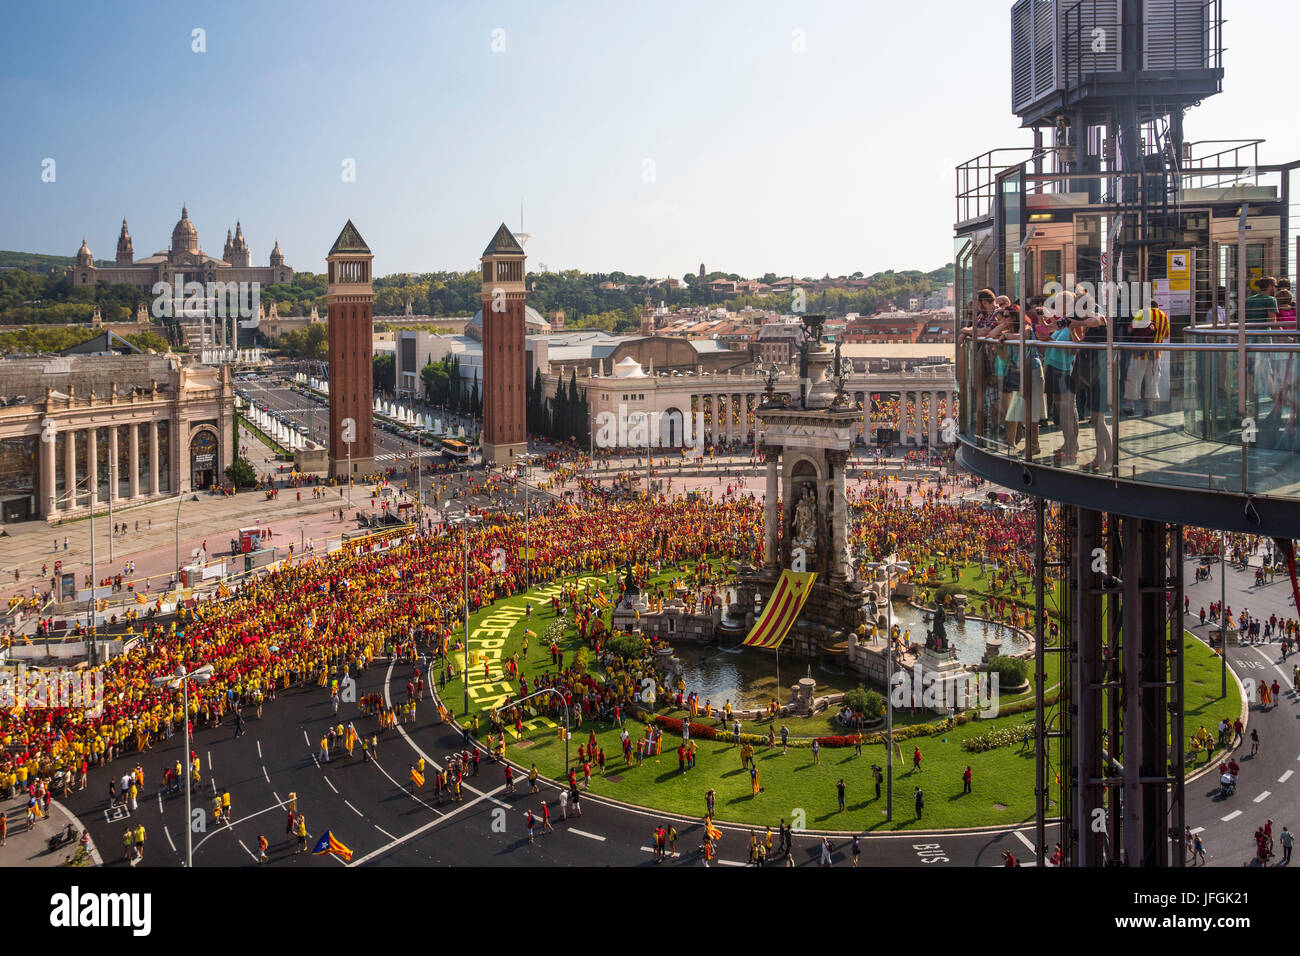 L'Espagne, la Catalogne, la ville de Barcelone, Espagne, la Plaça d'Espanya, La colline de Montjuich, Célébration 2014, les droits de l'Diada drapeau catalan Banque D'Images